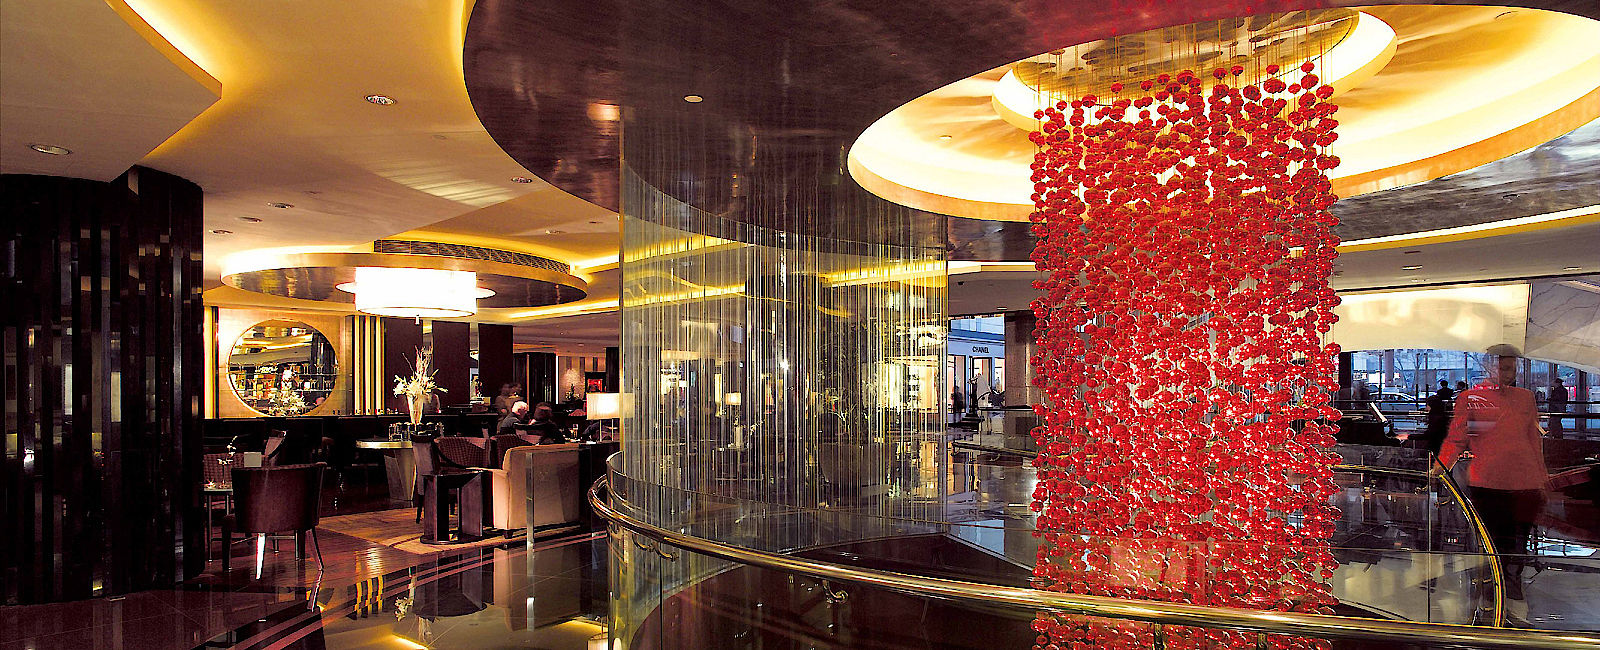 HOTEL TIPPS
 The Peninsula Beijing 
 Luxuriöser Wellness Urlaub in einem interessant designten Hotel 